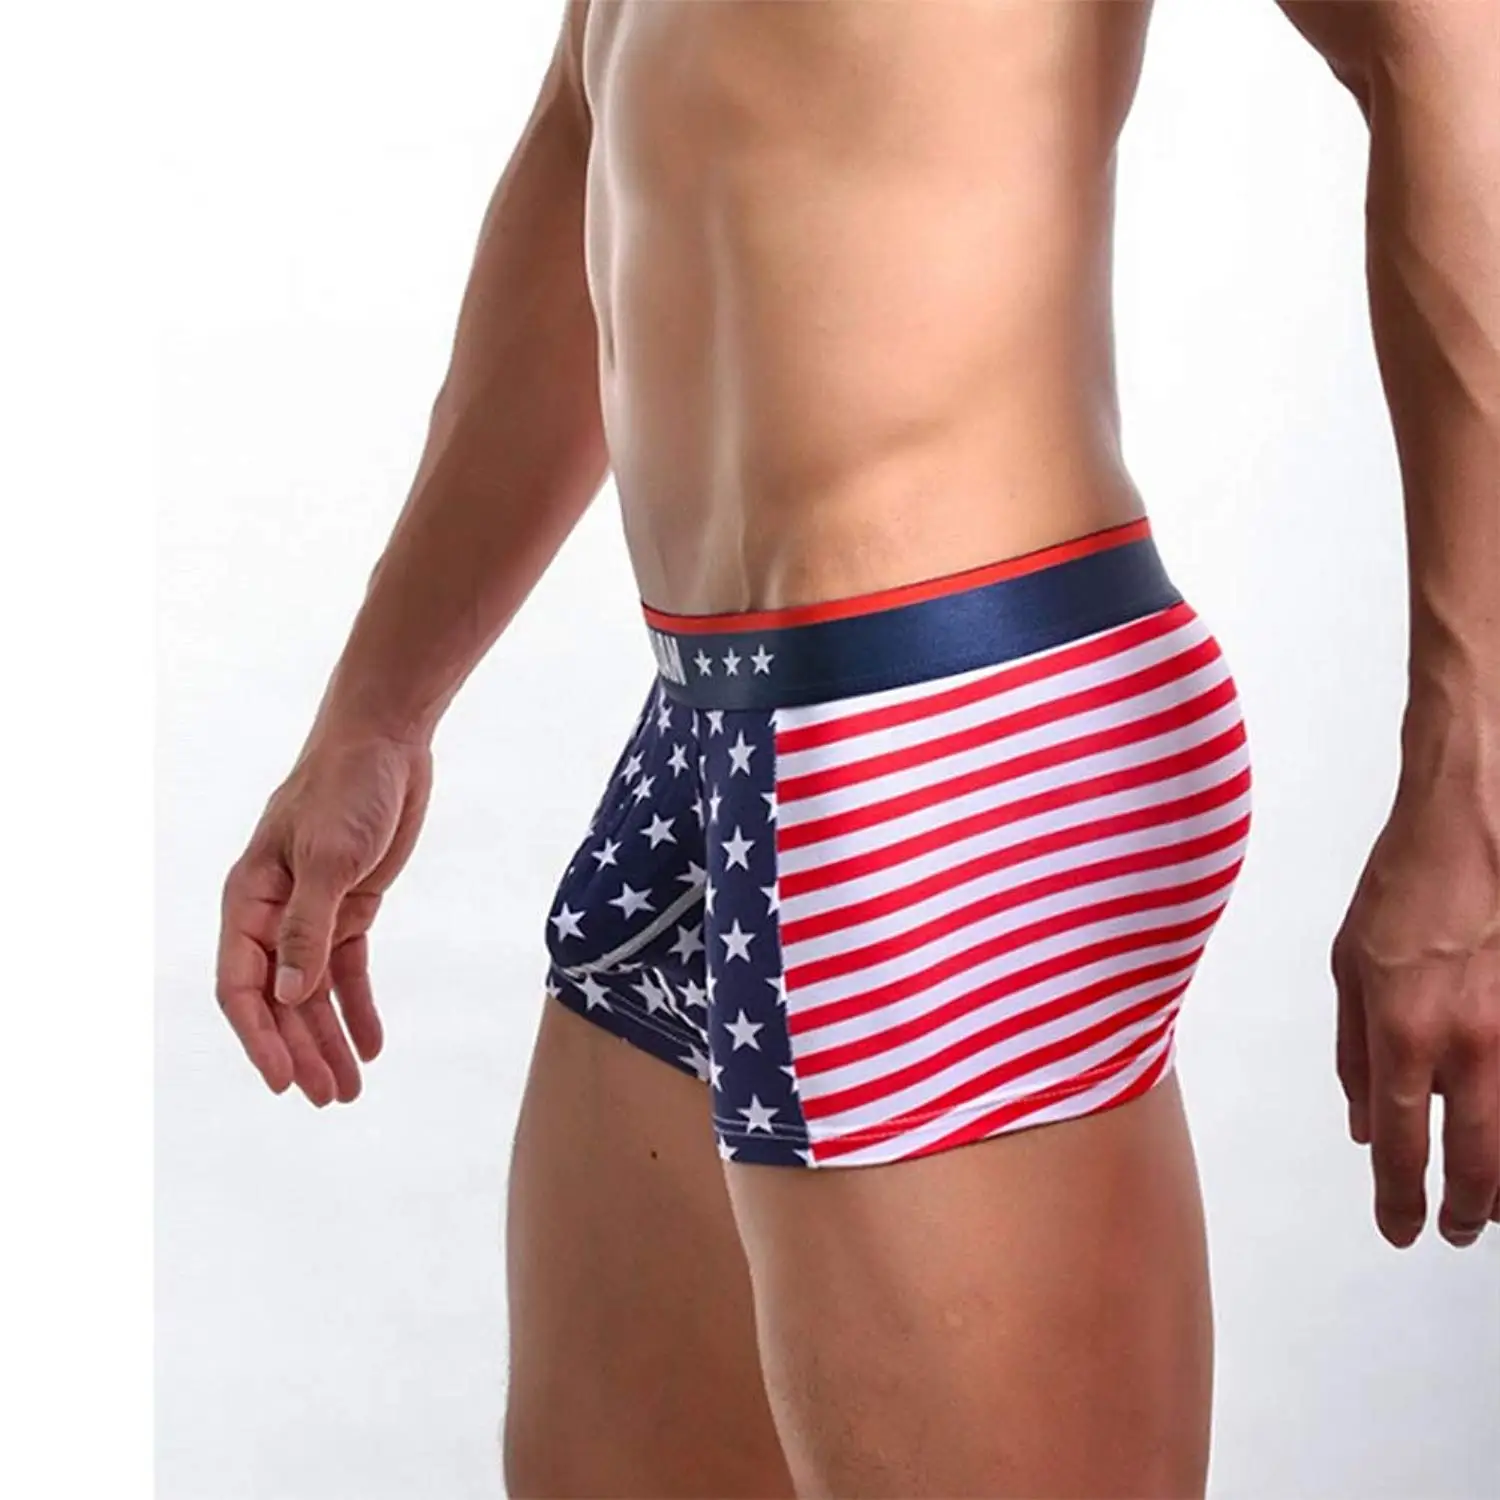 Yeke Men 4Pcs//Set Underwear Cotton Briefs Boxer Shorts Underpants with Pouch U Convex